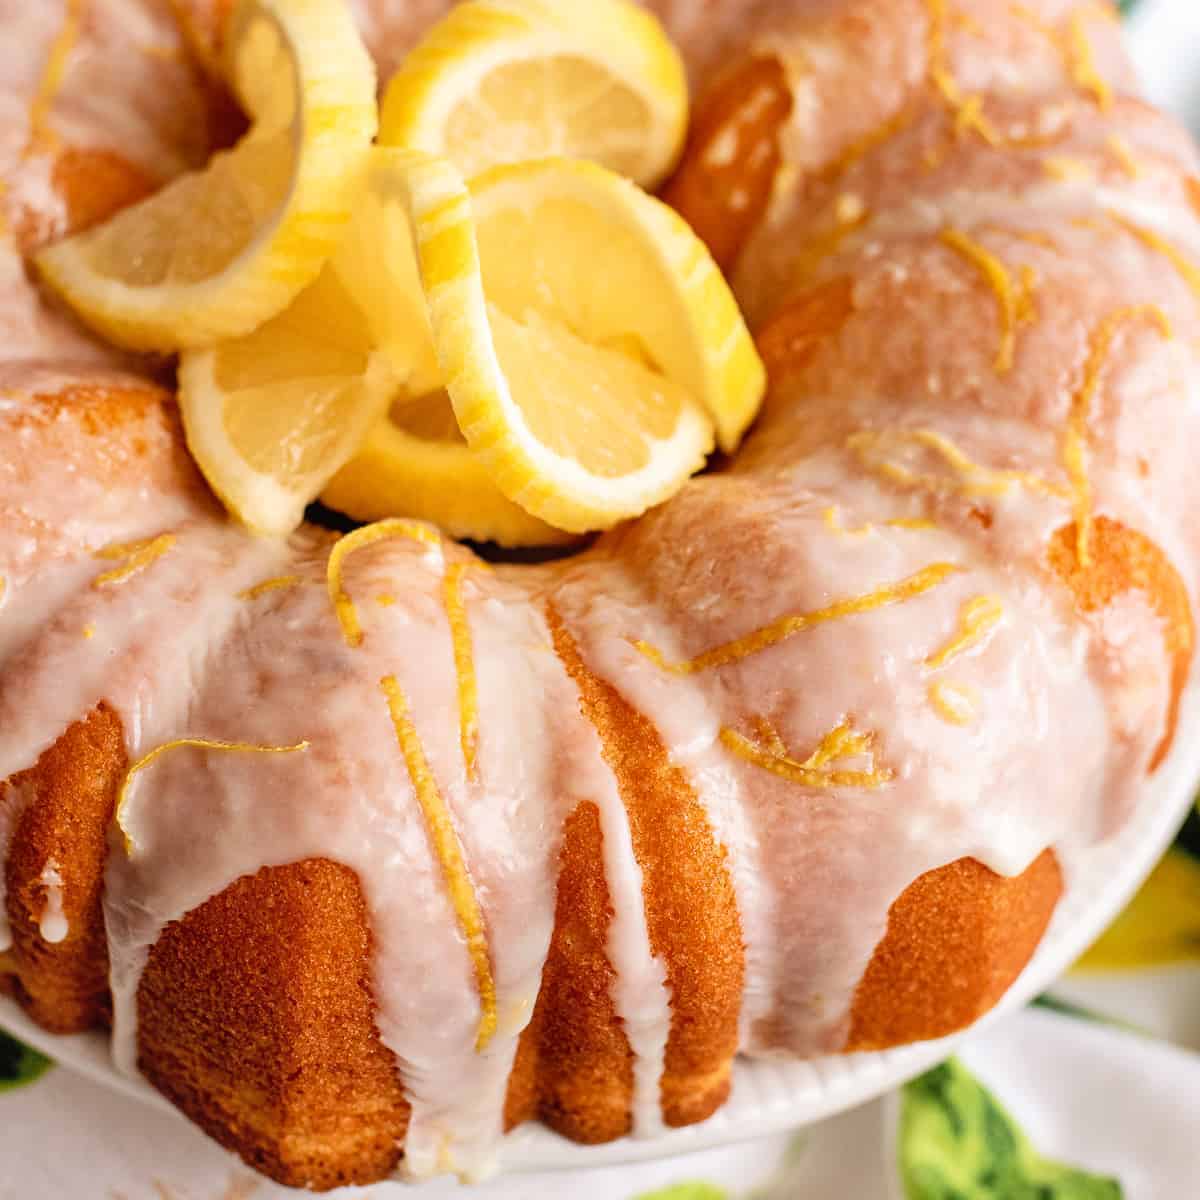 Lemon Bundt Cake {With Cake Mix} - CakeWhiz